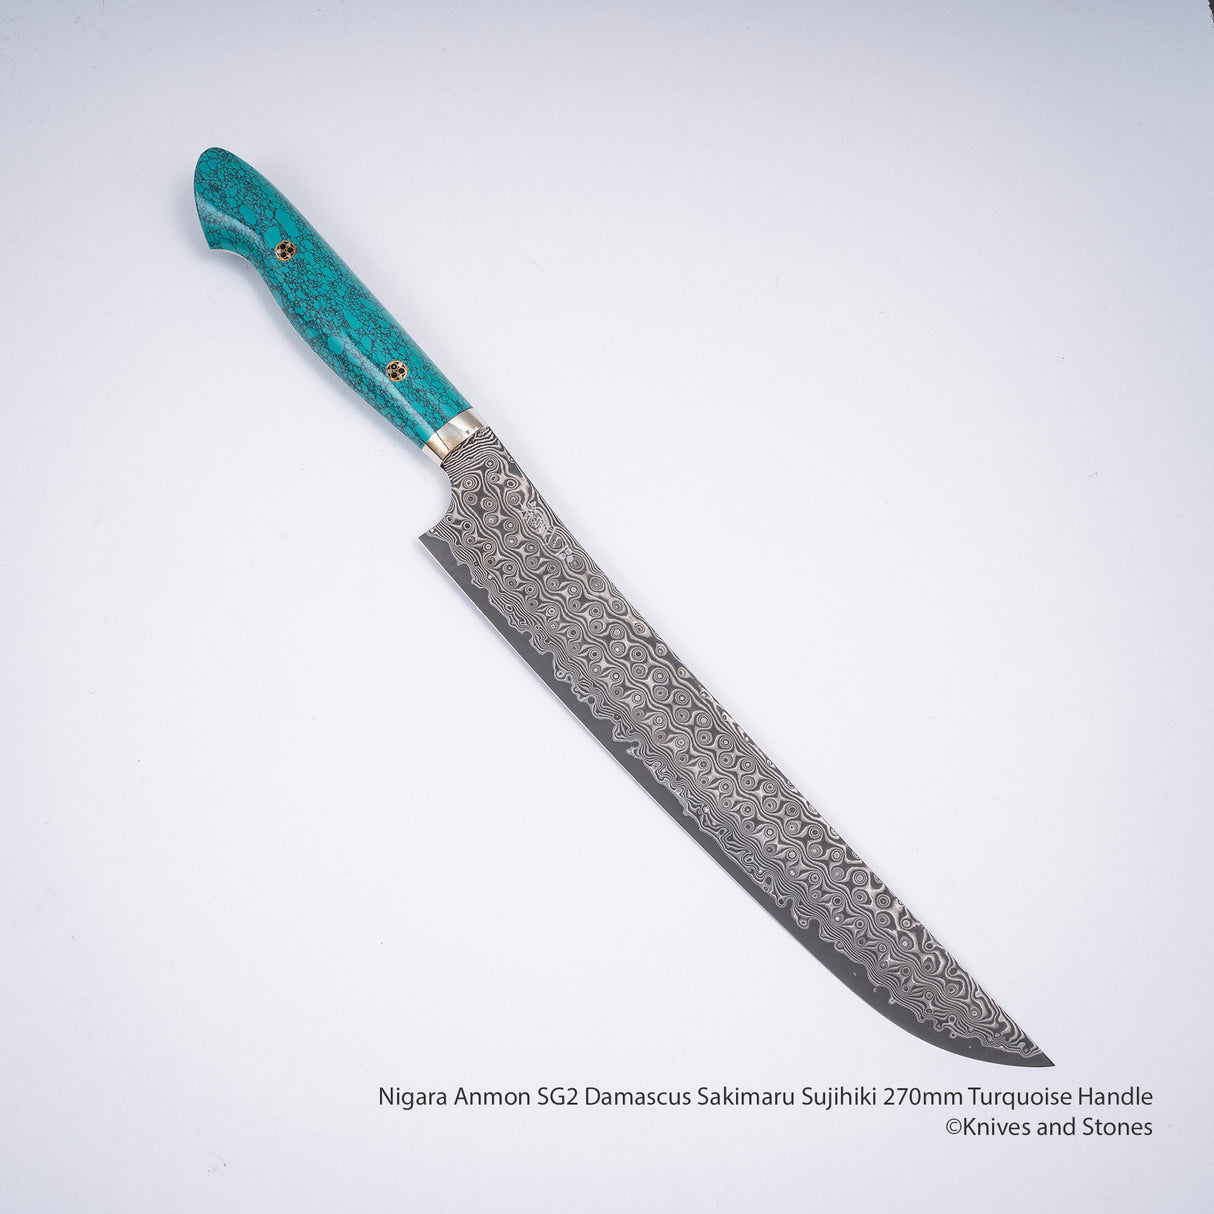 Nigara Anmon SG2 Damascus Sakimaru Sujihiki 270mm Turquoise Handle SP1